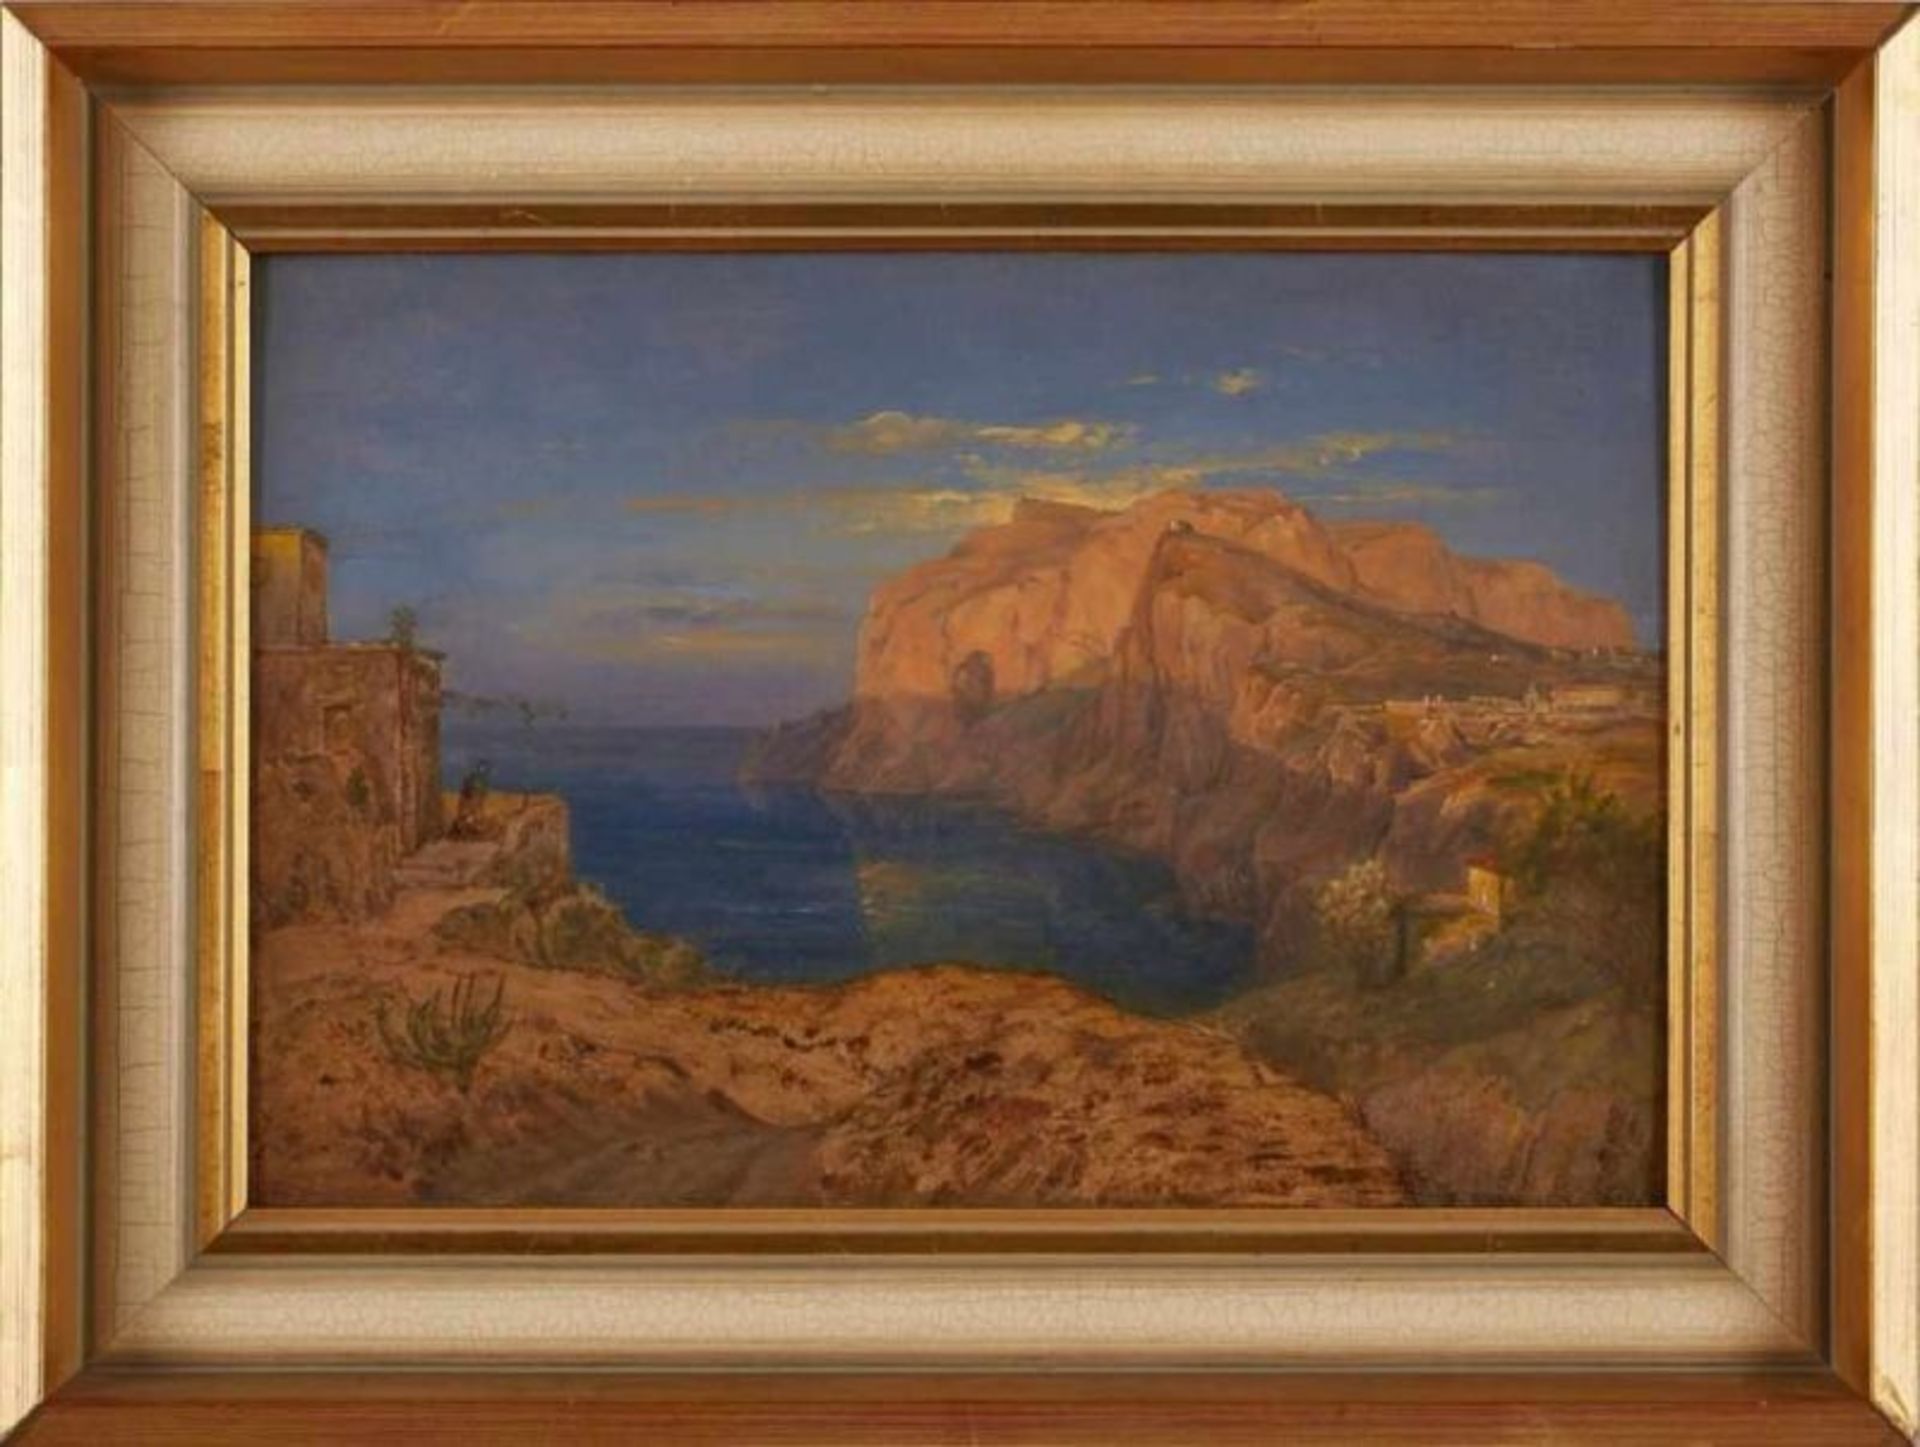 Gemälde/Ölstudie Carl Morgenstern 1811 Frankfurt - 1893 Frankfurt "Capri" Verso von alter Hand - Bild 3 aus 3